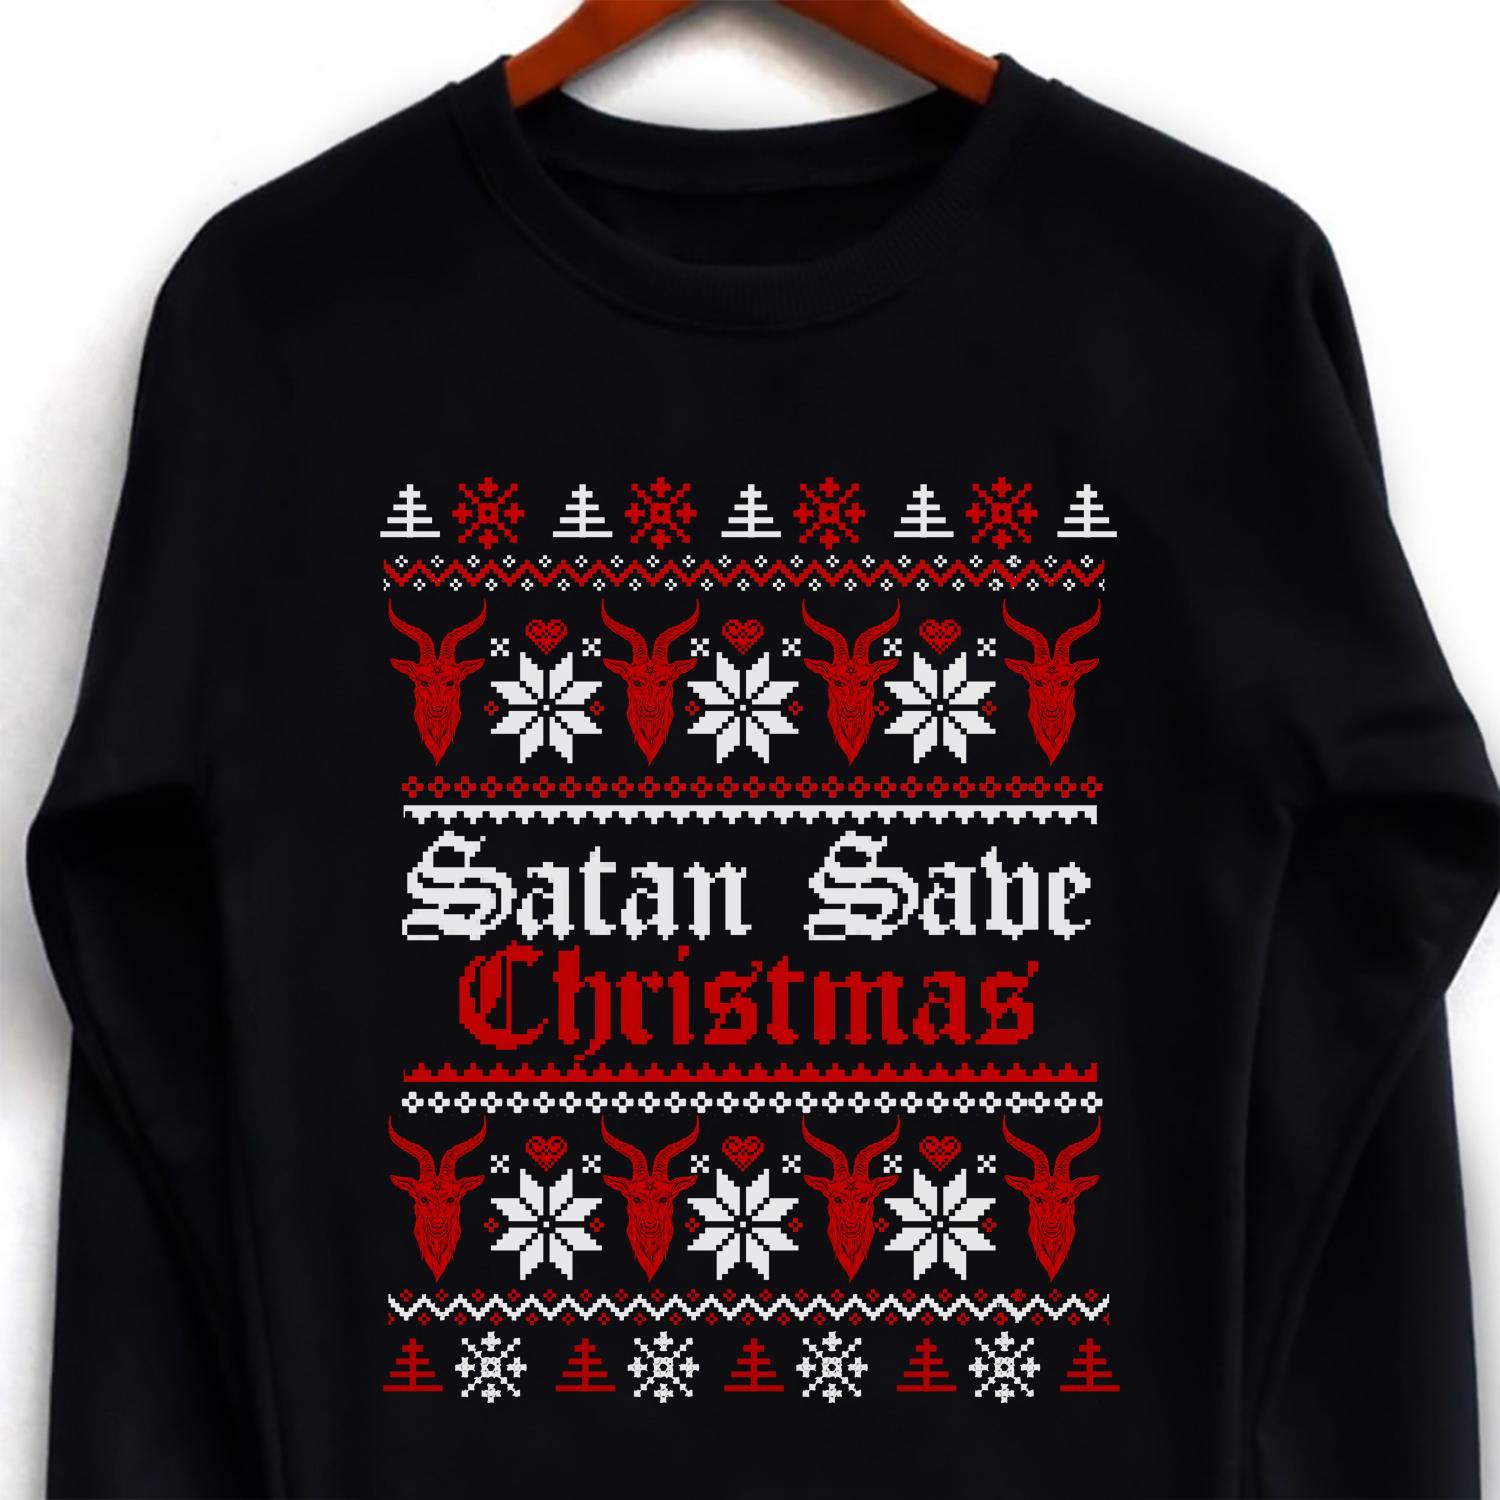 Satan Save Christmas - Christmas ugly sweater, gift for Christmas day